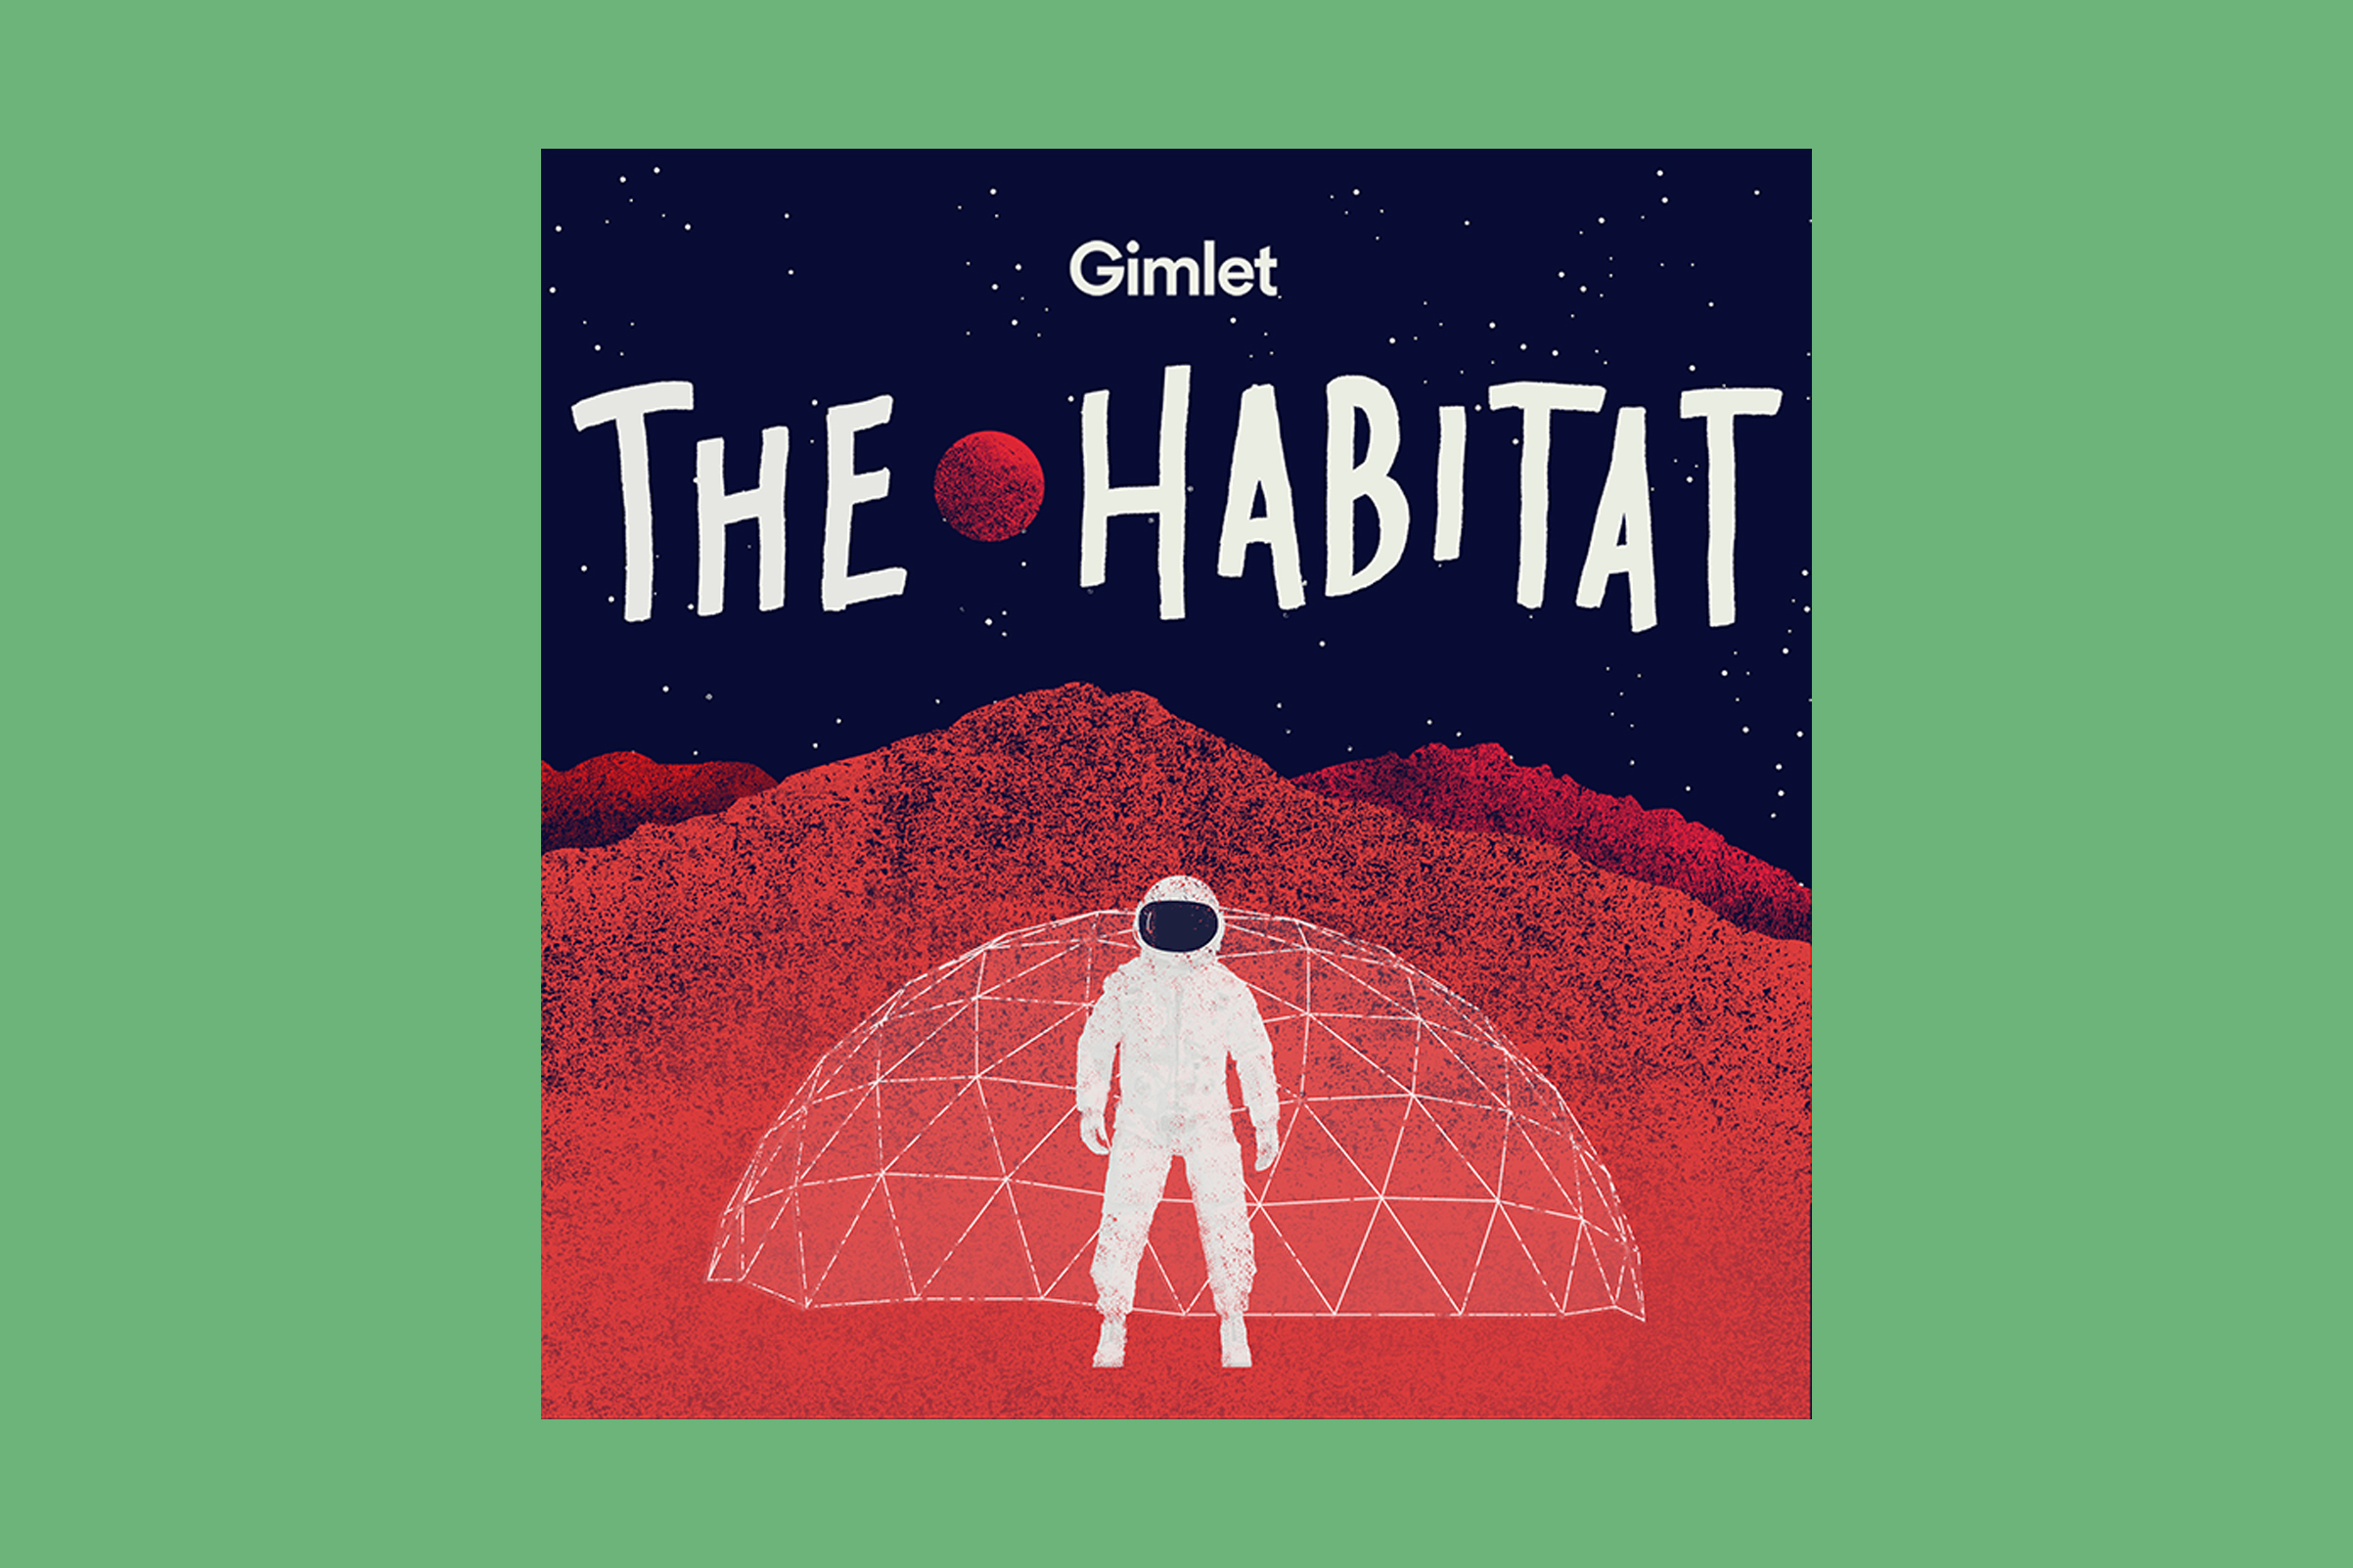 The Habitat